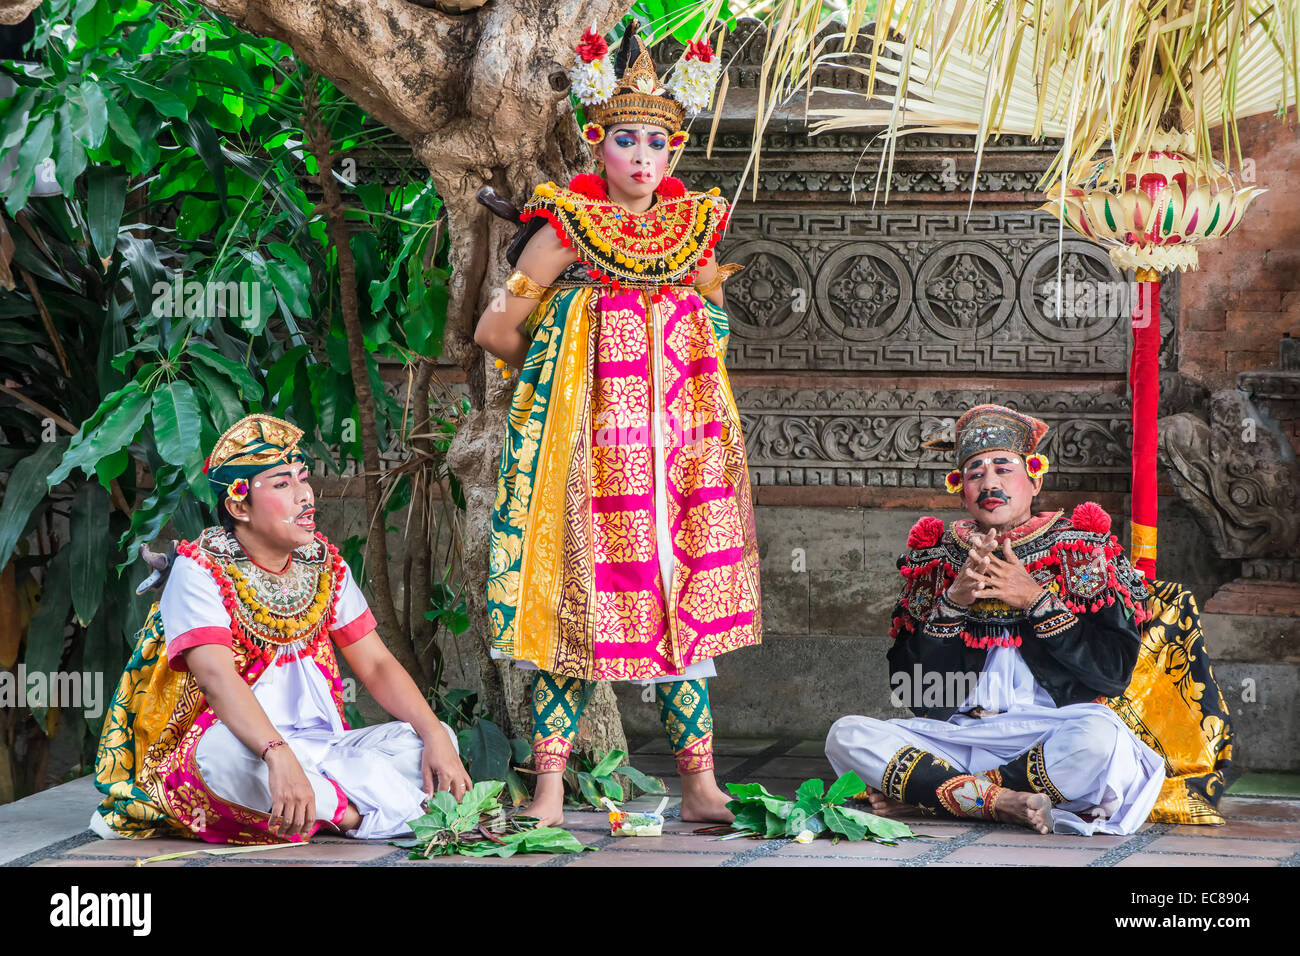 Barong et Kris, danse traditionnelle balinaise, Ubud, Bali, Indonésie Banque D'Images